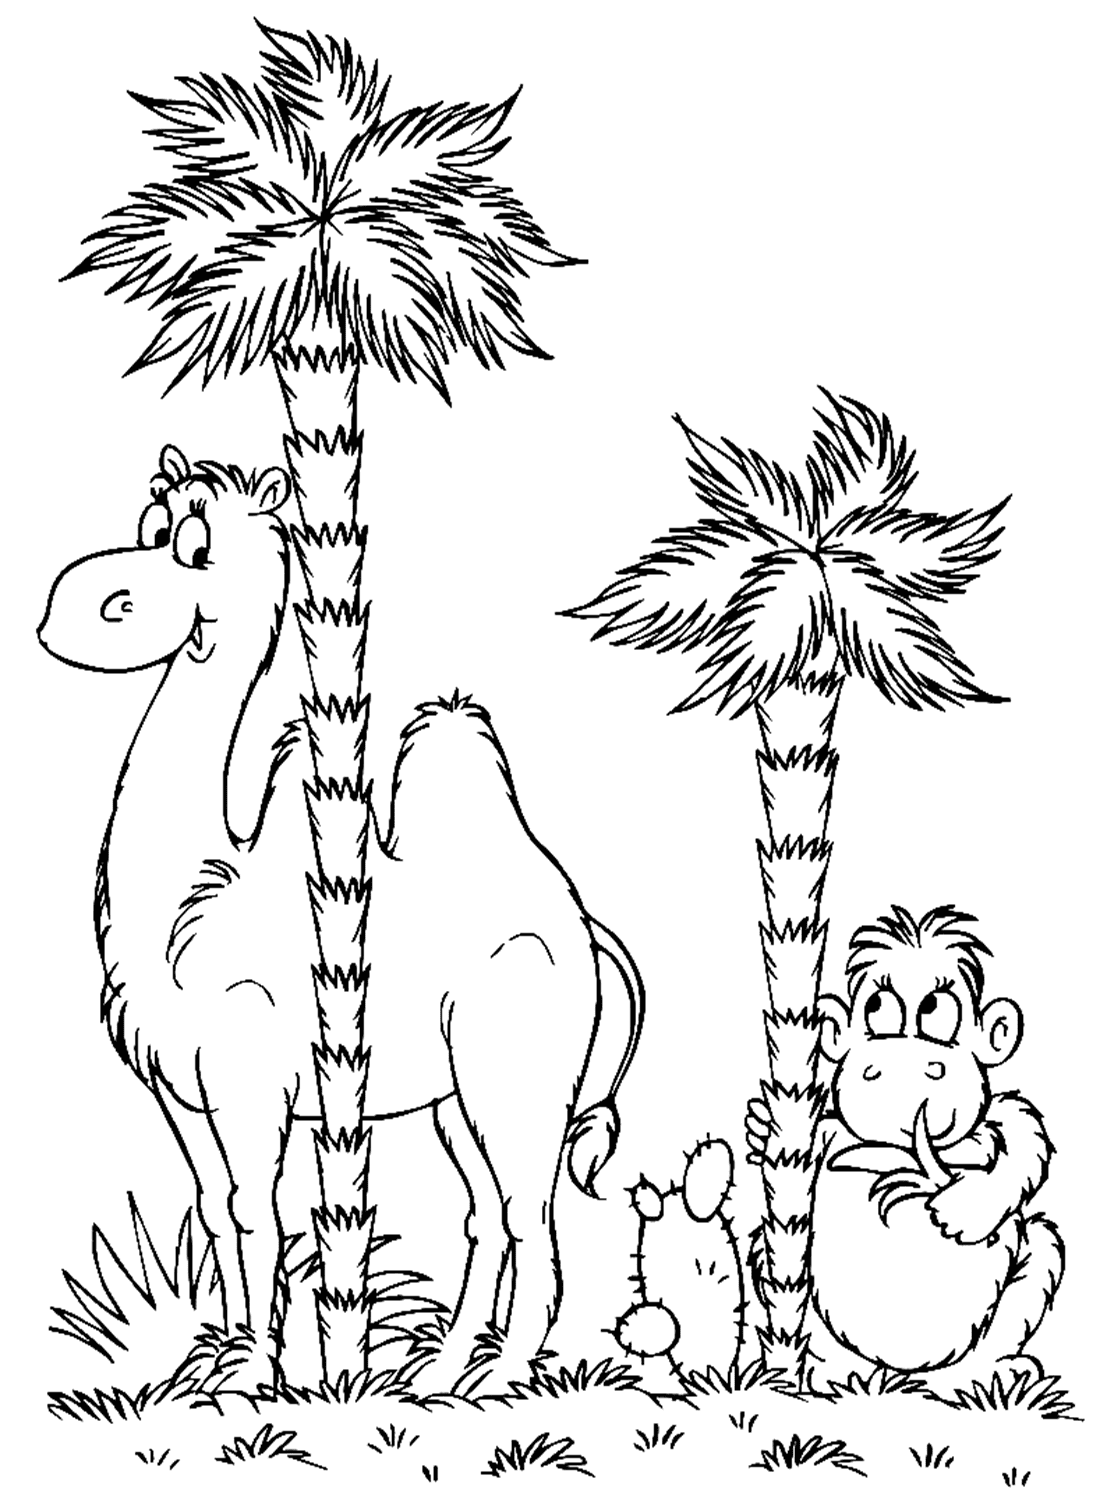 Kamel und Affe von Camel